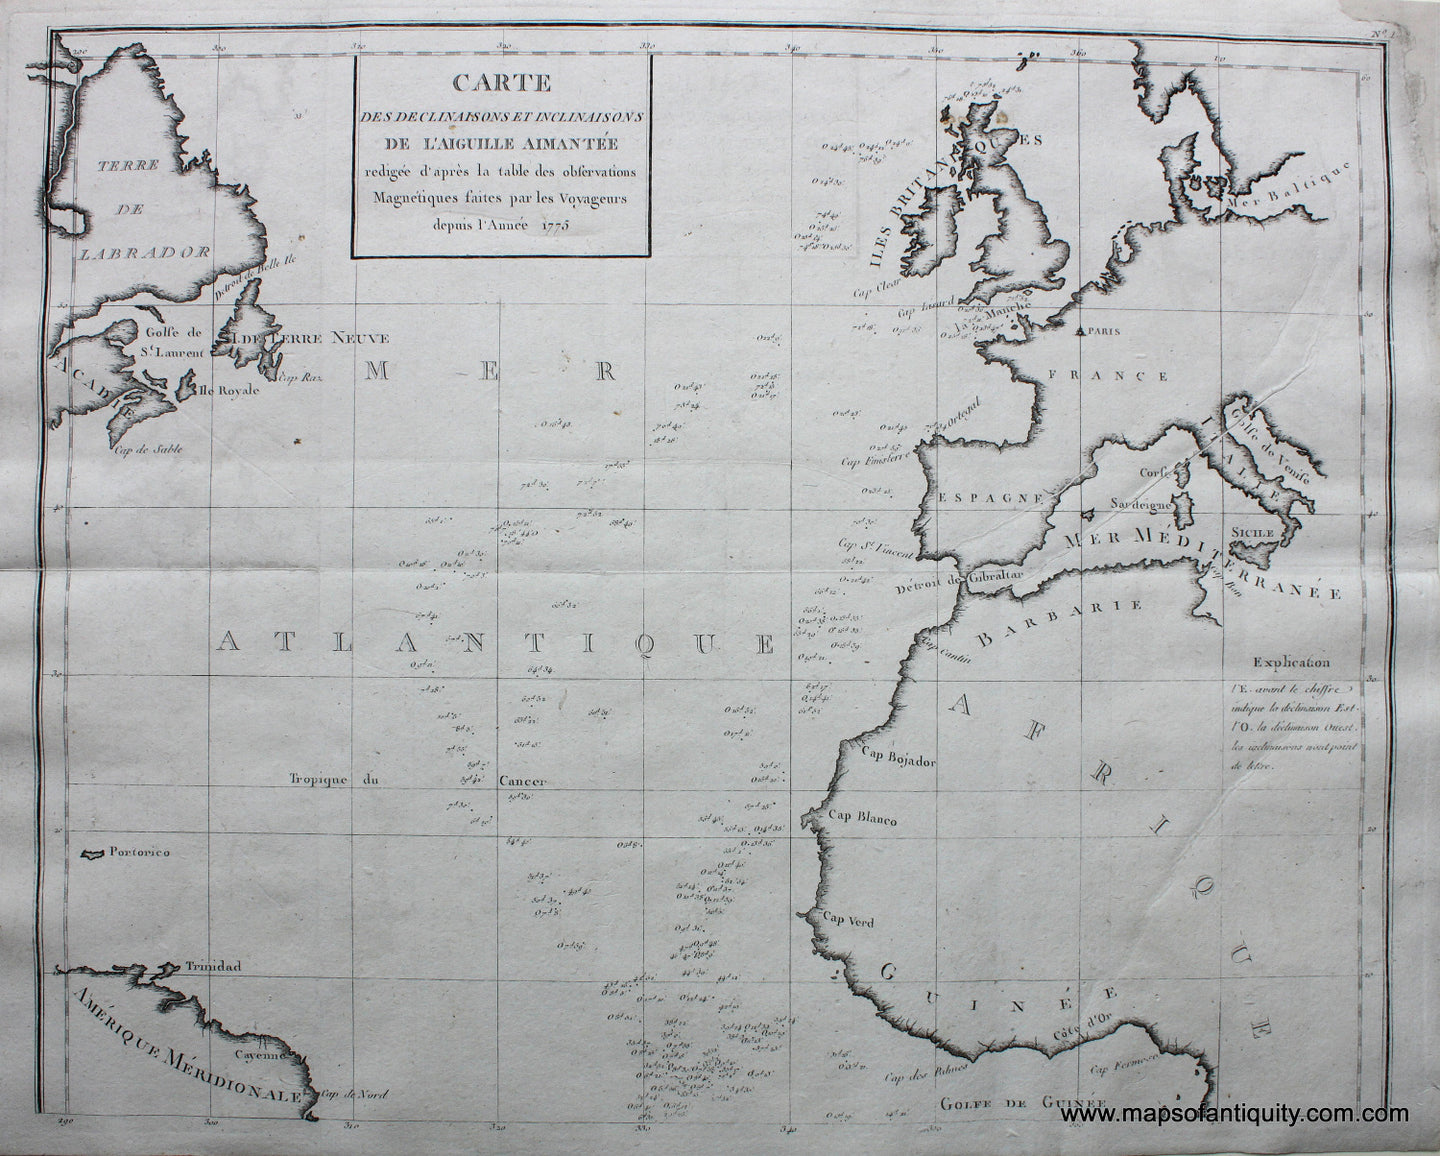 Black-and-White-Engraved-Antique-Map-Carte-des-Declinaisons-et-Inclinaisons-de-L'Aiguille-Aimantee-redigee-de'apres-la-table-des-observations-Magnetiques-faites-par-les-Voyageurs-depuis-l'Annee-1775-World--1775-Buffon-Maps-Of-Antiquity